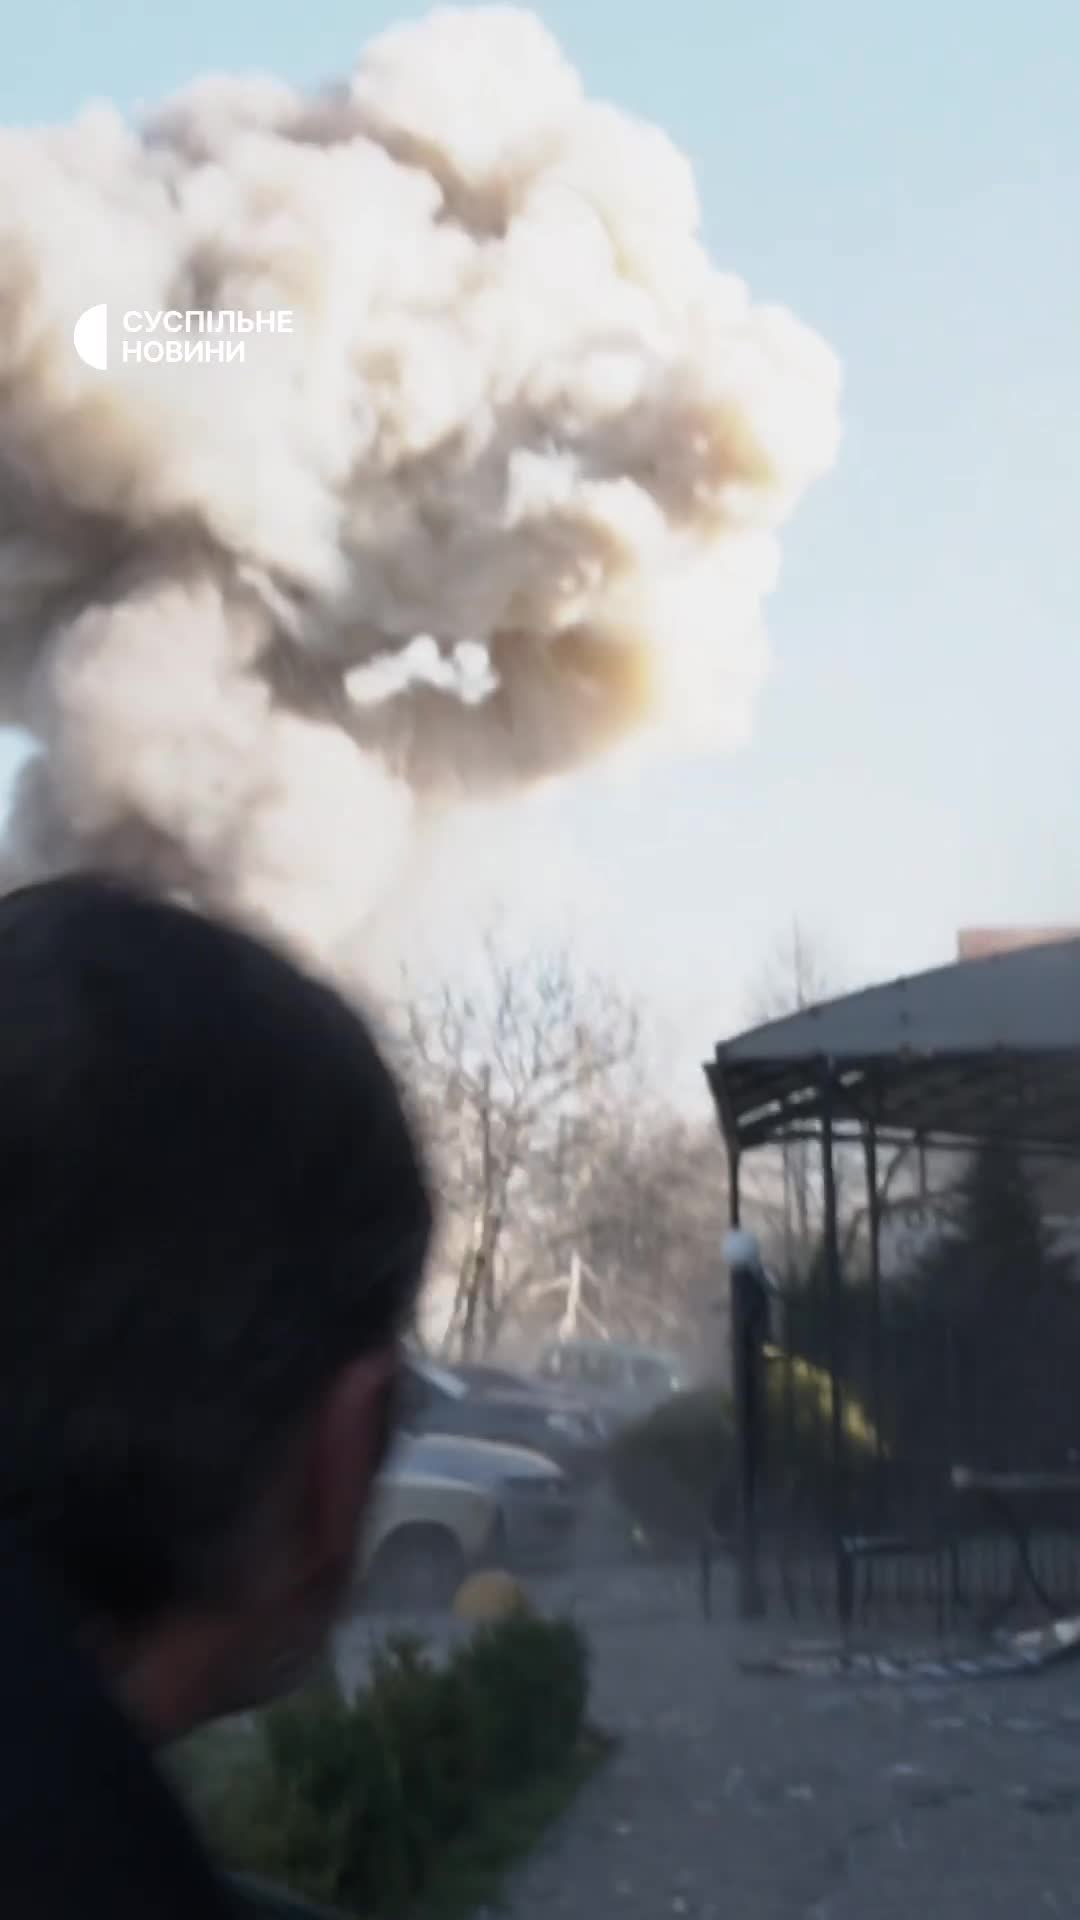 Doppio attacco missilistico a Zaporizhzhia mentre sul posto erano presenti soccorritori, polizia e giornalisti